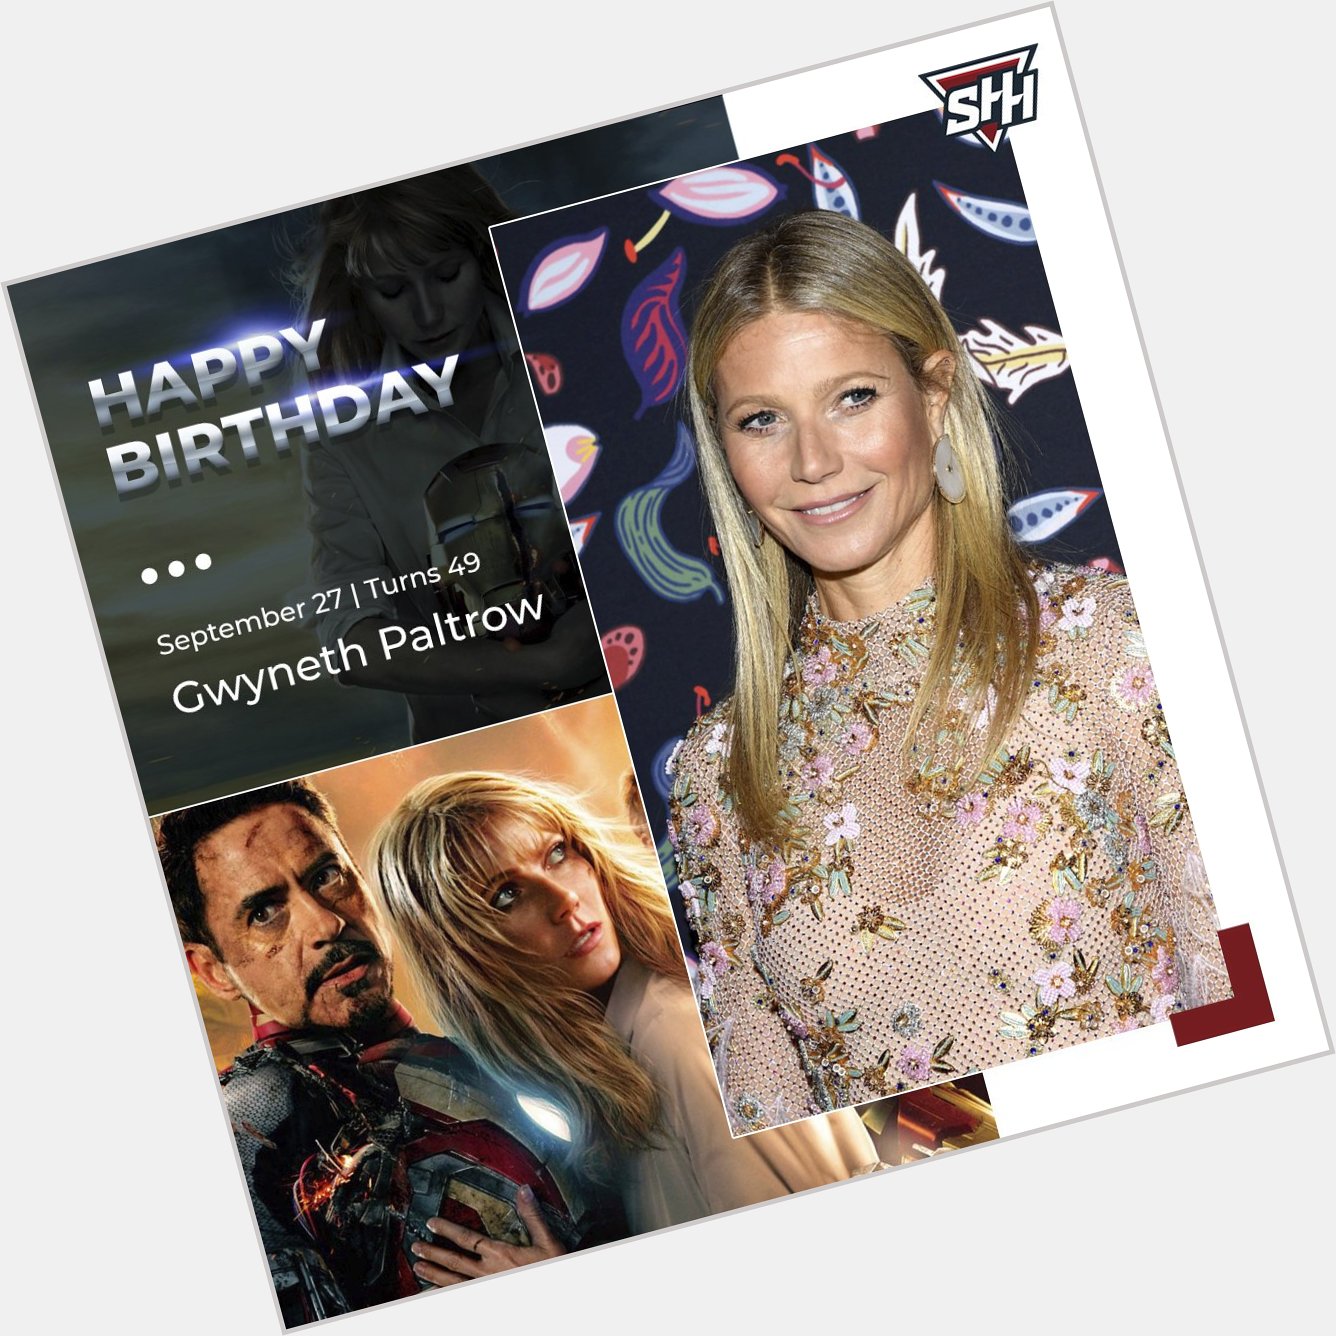 Happy Birthday to Gwyneth Paltrow! 